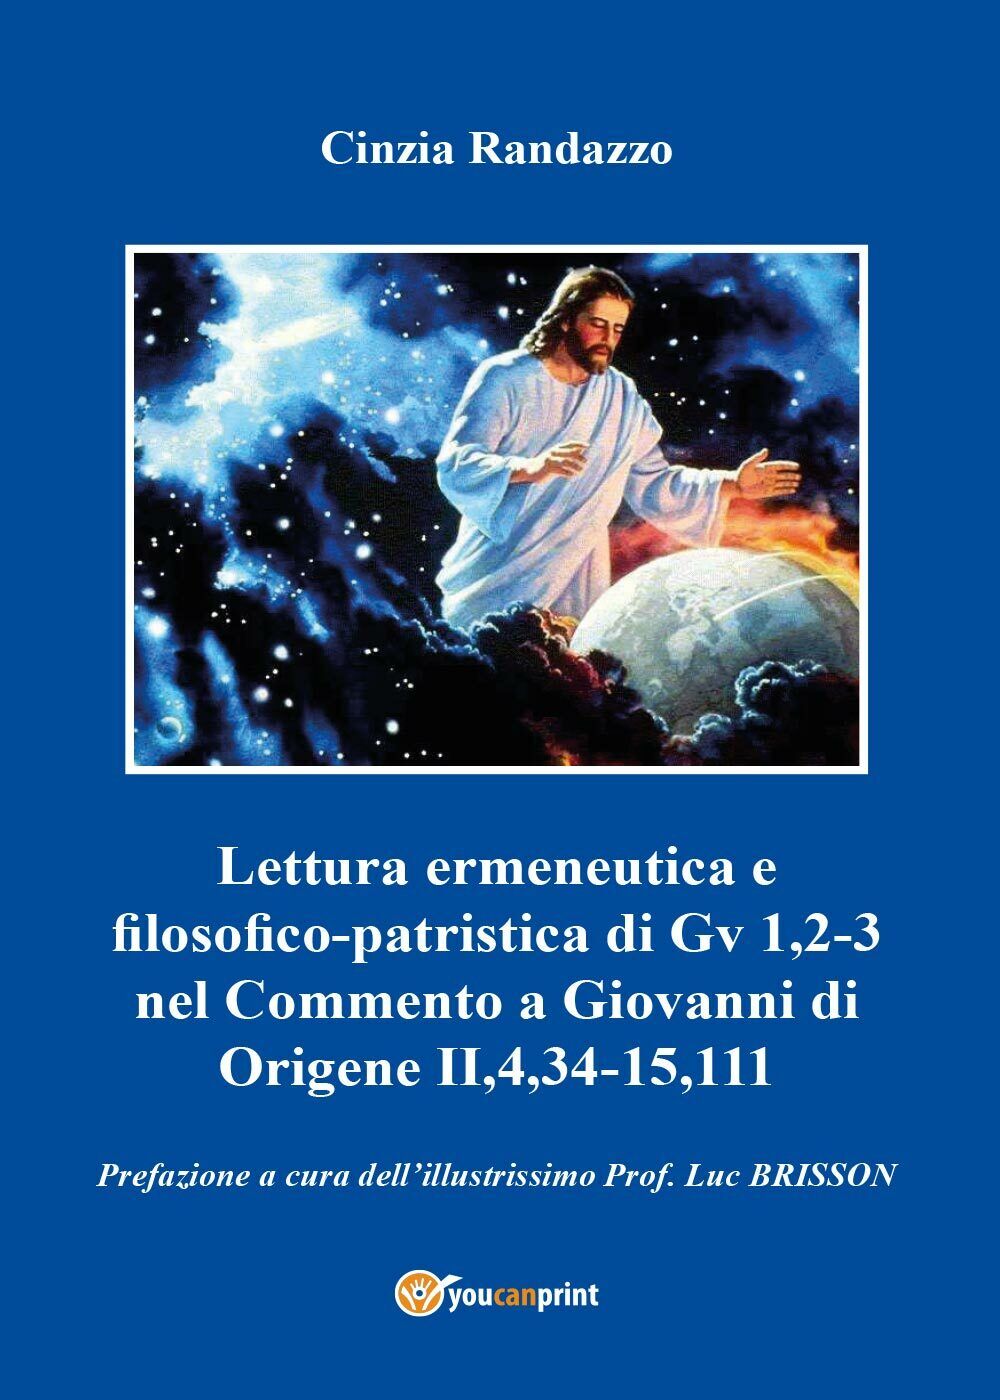 Lettura ermeneutica e filosofico-patristica di Gv 1,2-3 nel Commento a Giovanni 